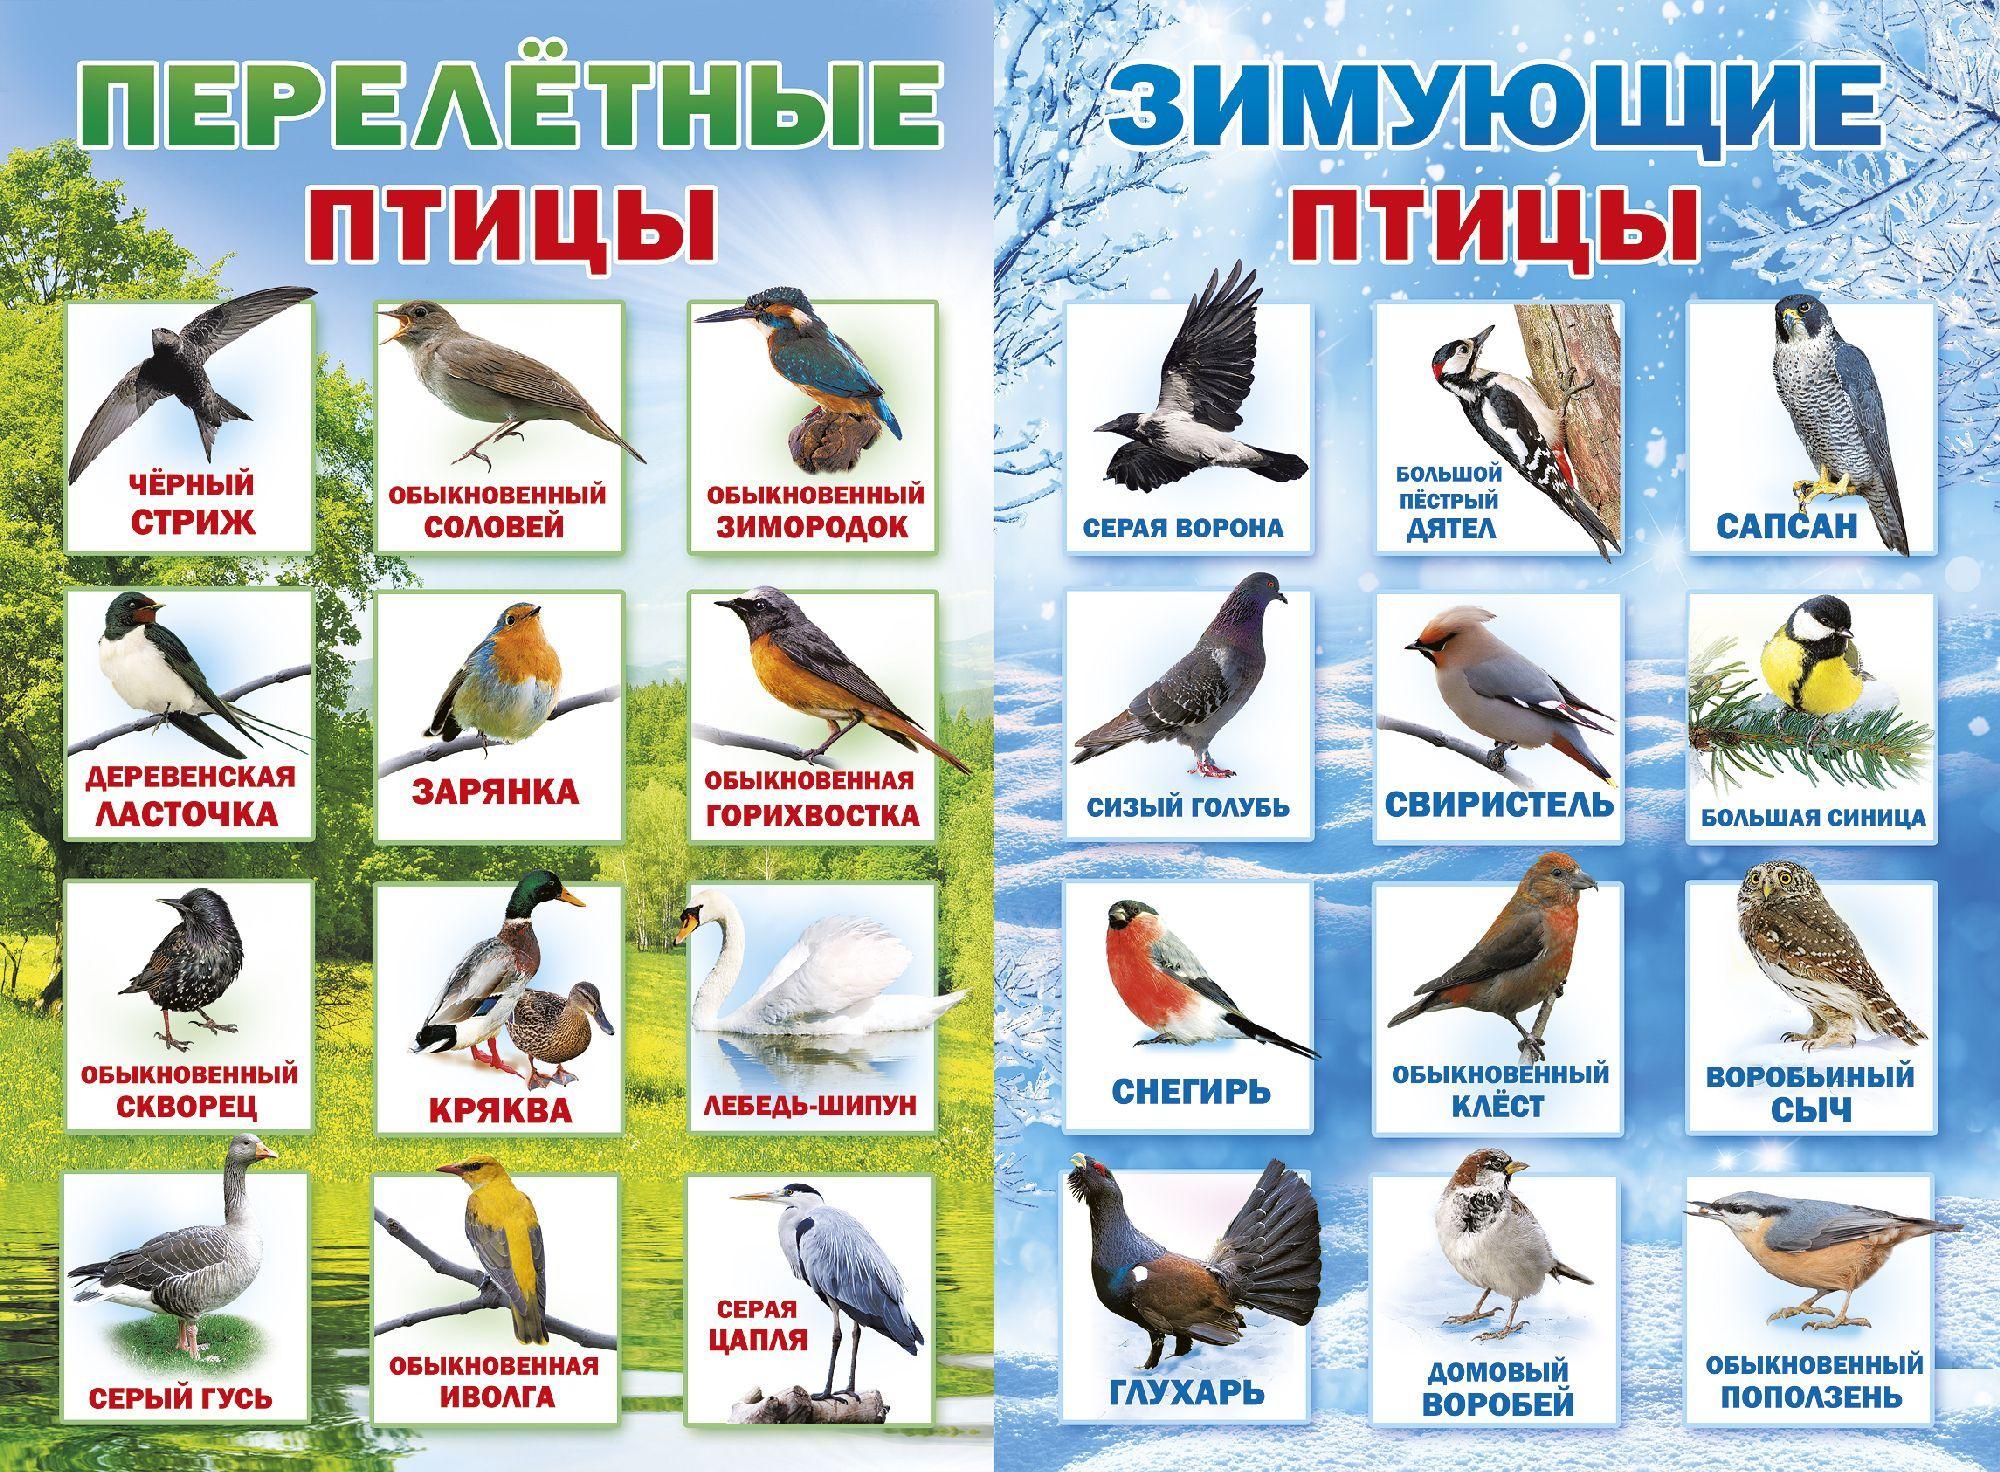 Зимующие птицы украины картинки фотографии